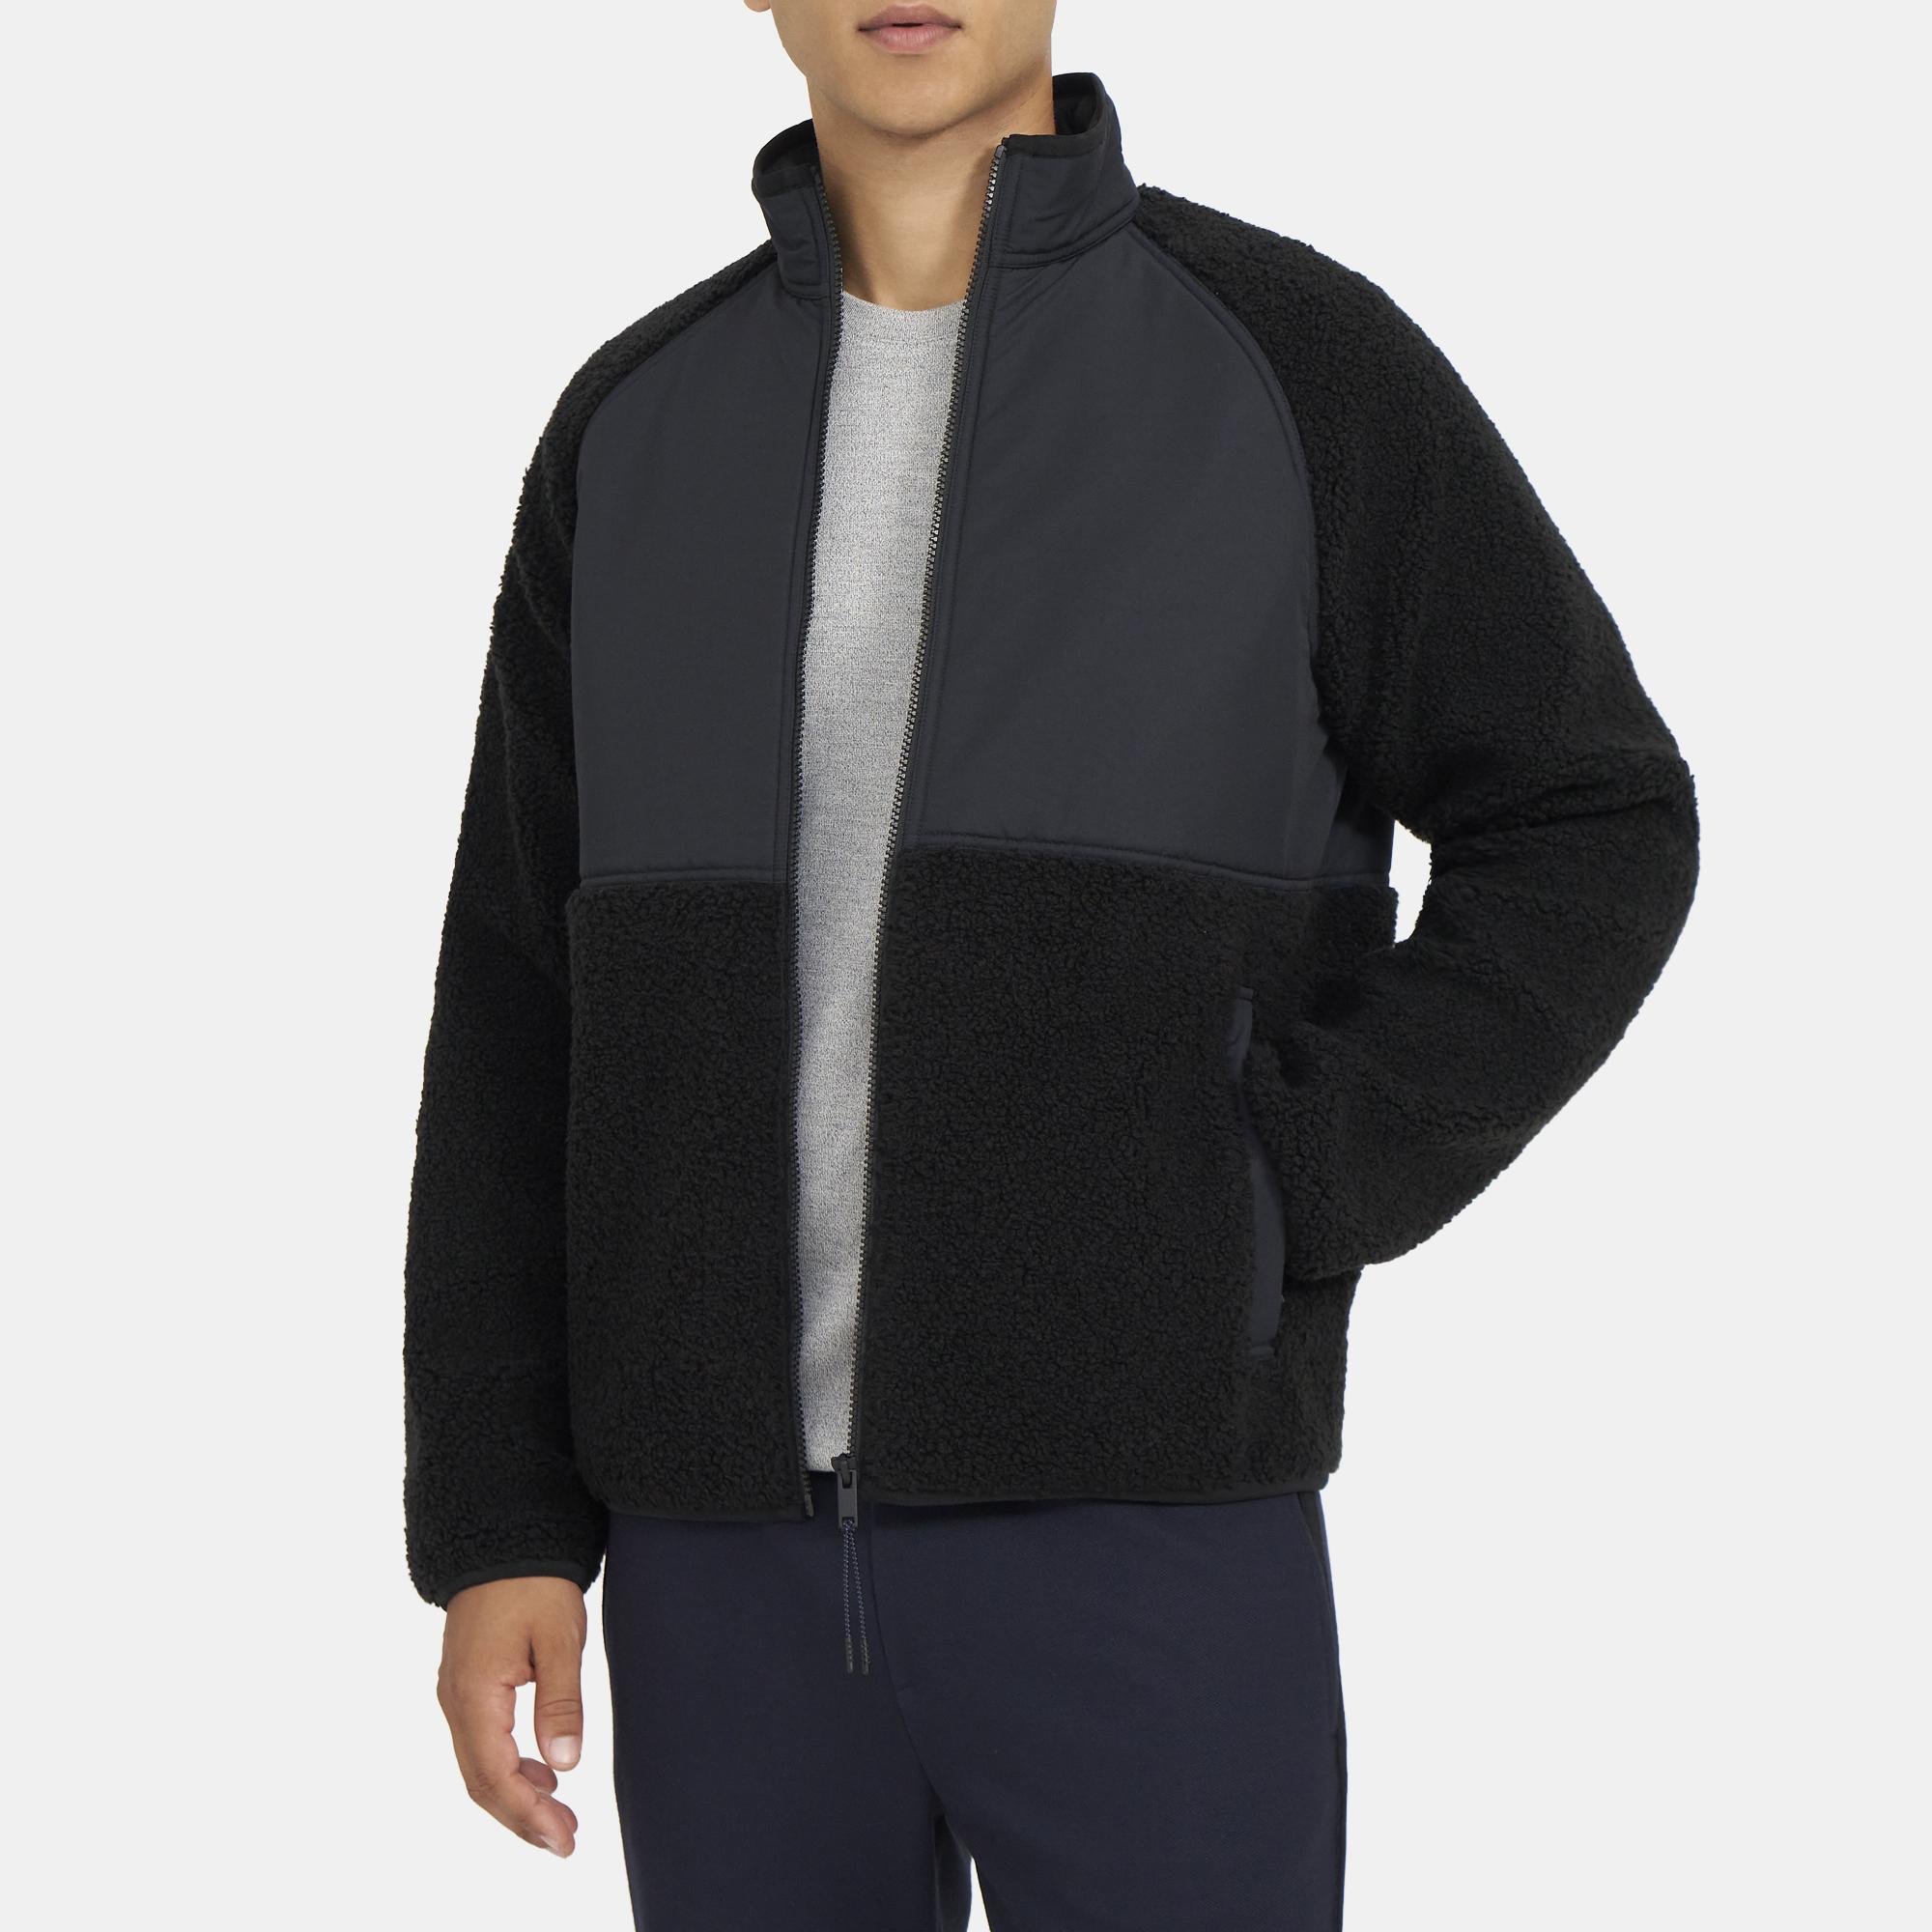 Luxurious Fleece Jacket - Stenton